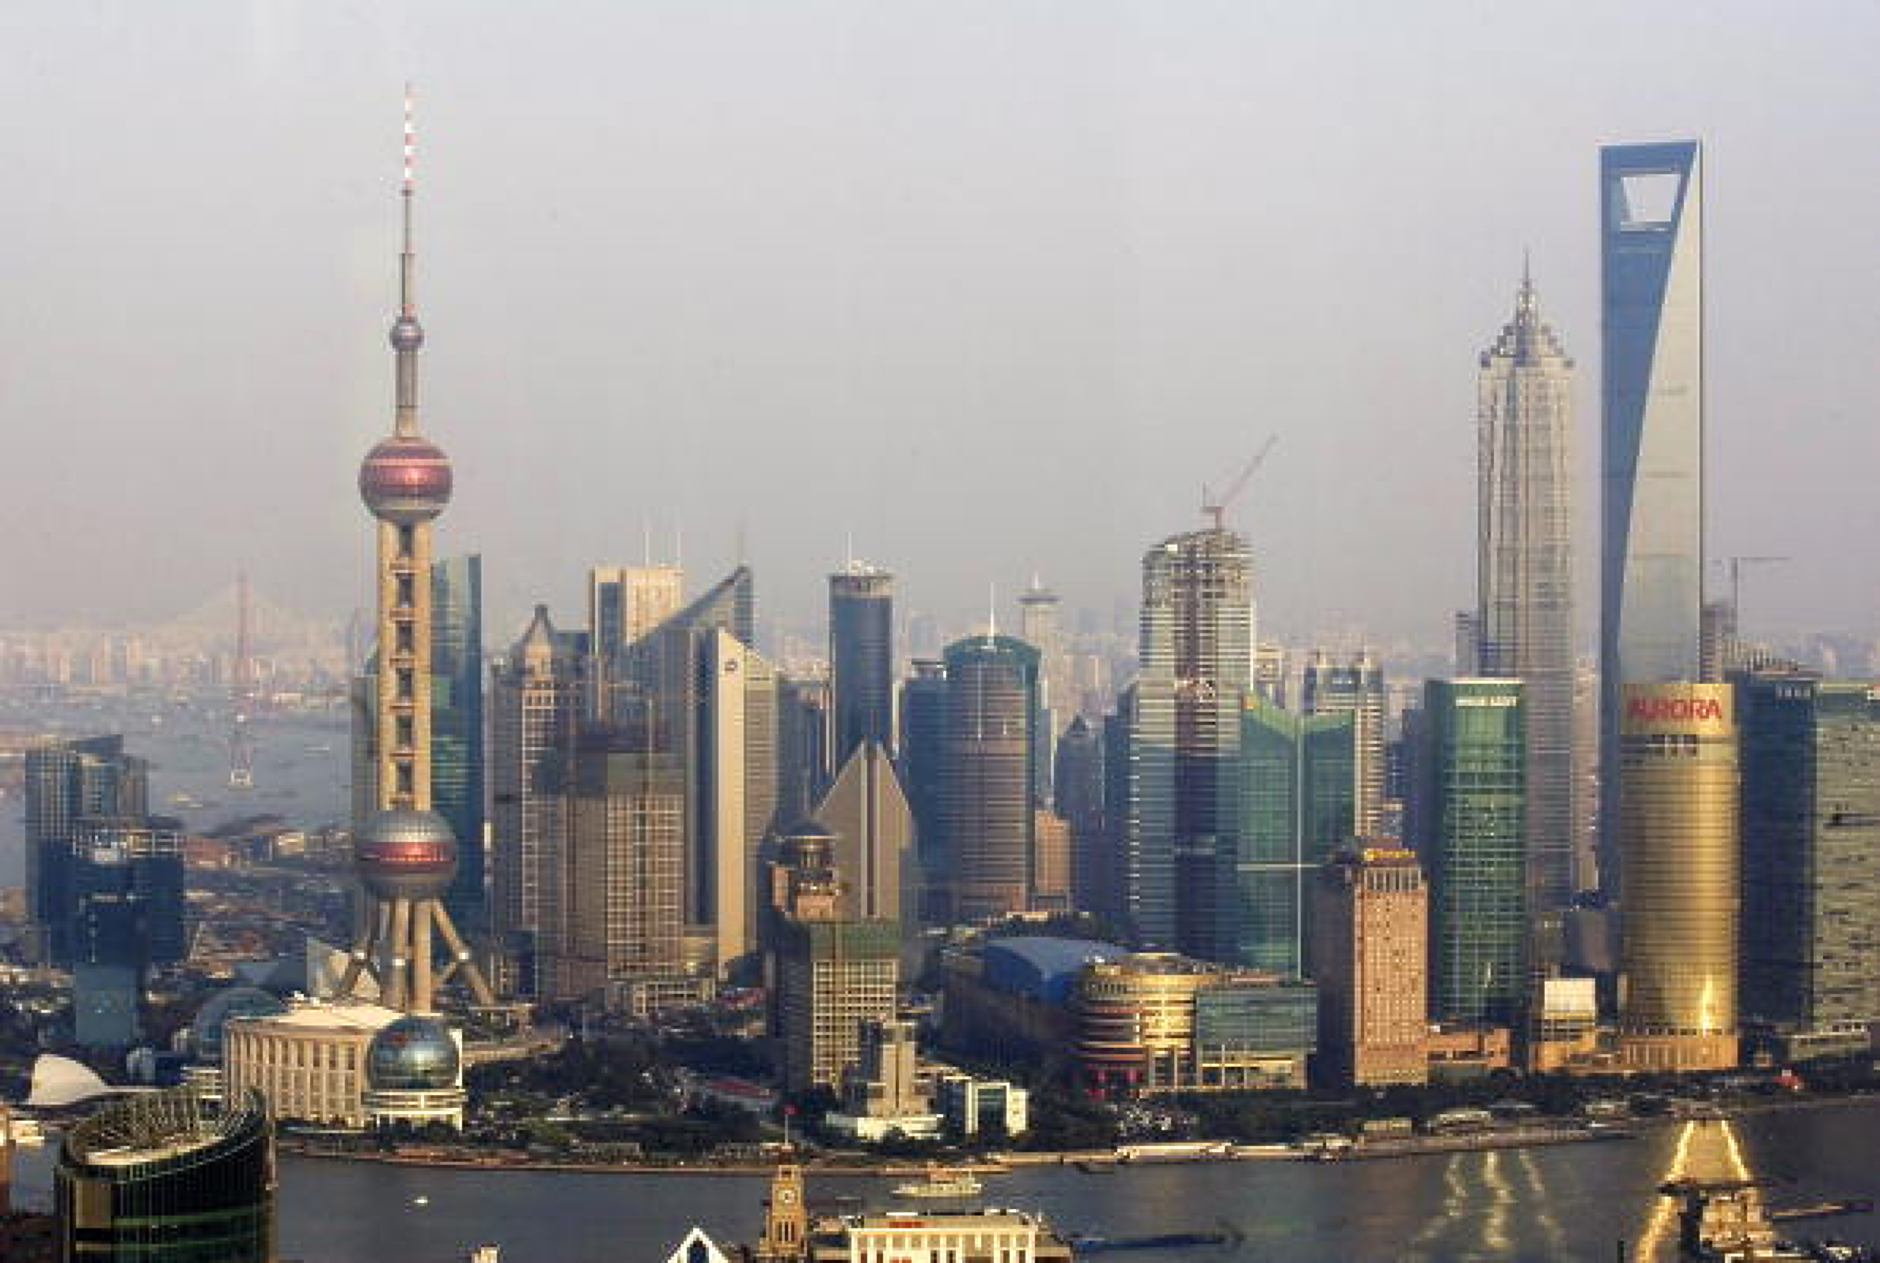 Властите в Китай правят Шанхай пилотна зона за свободна търговия по световни стандарти